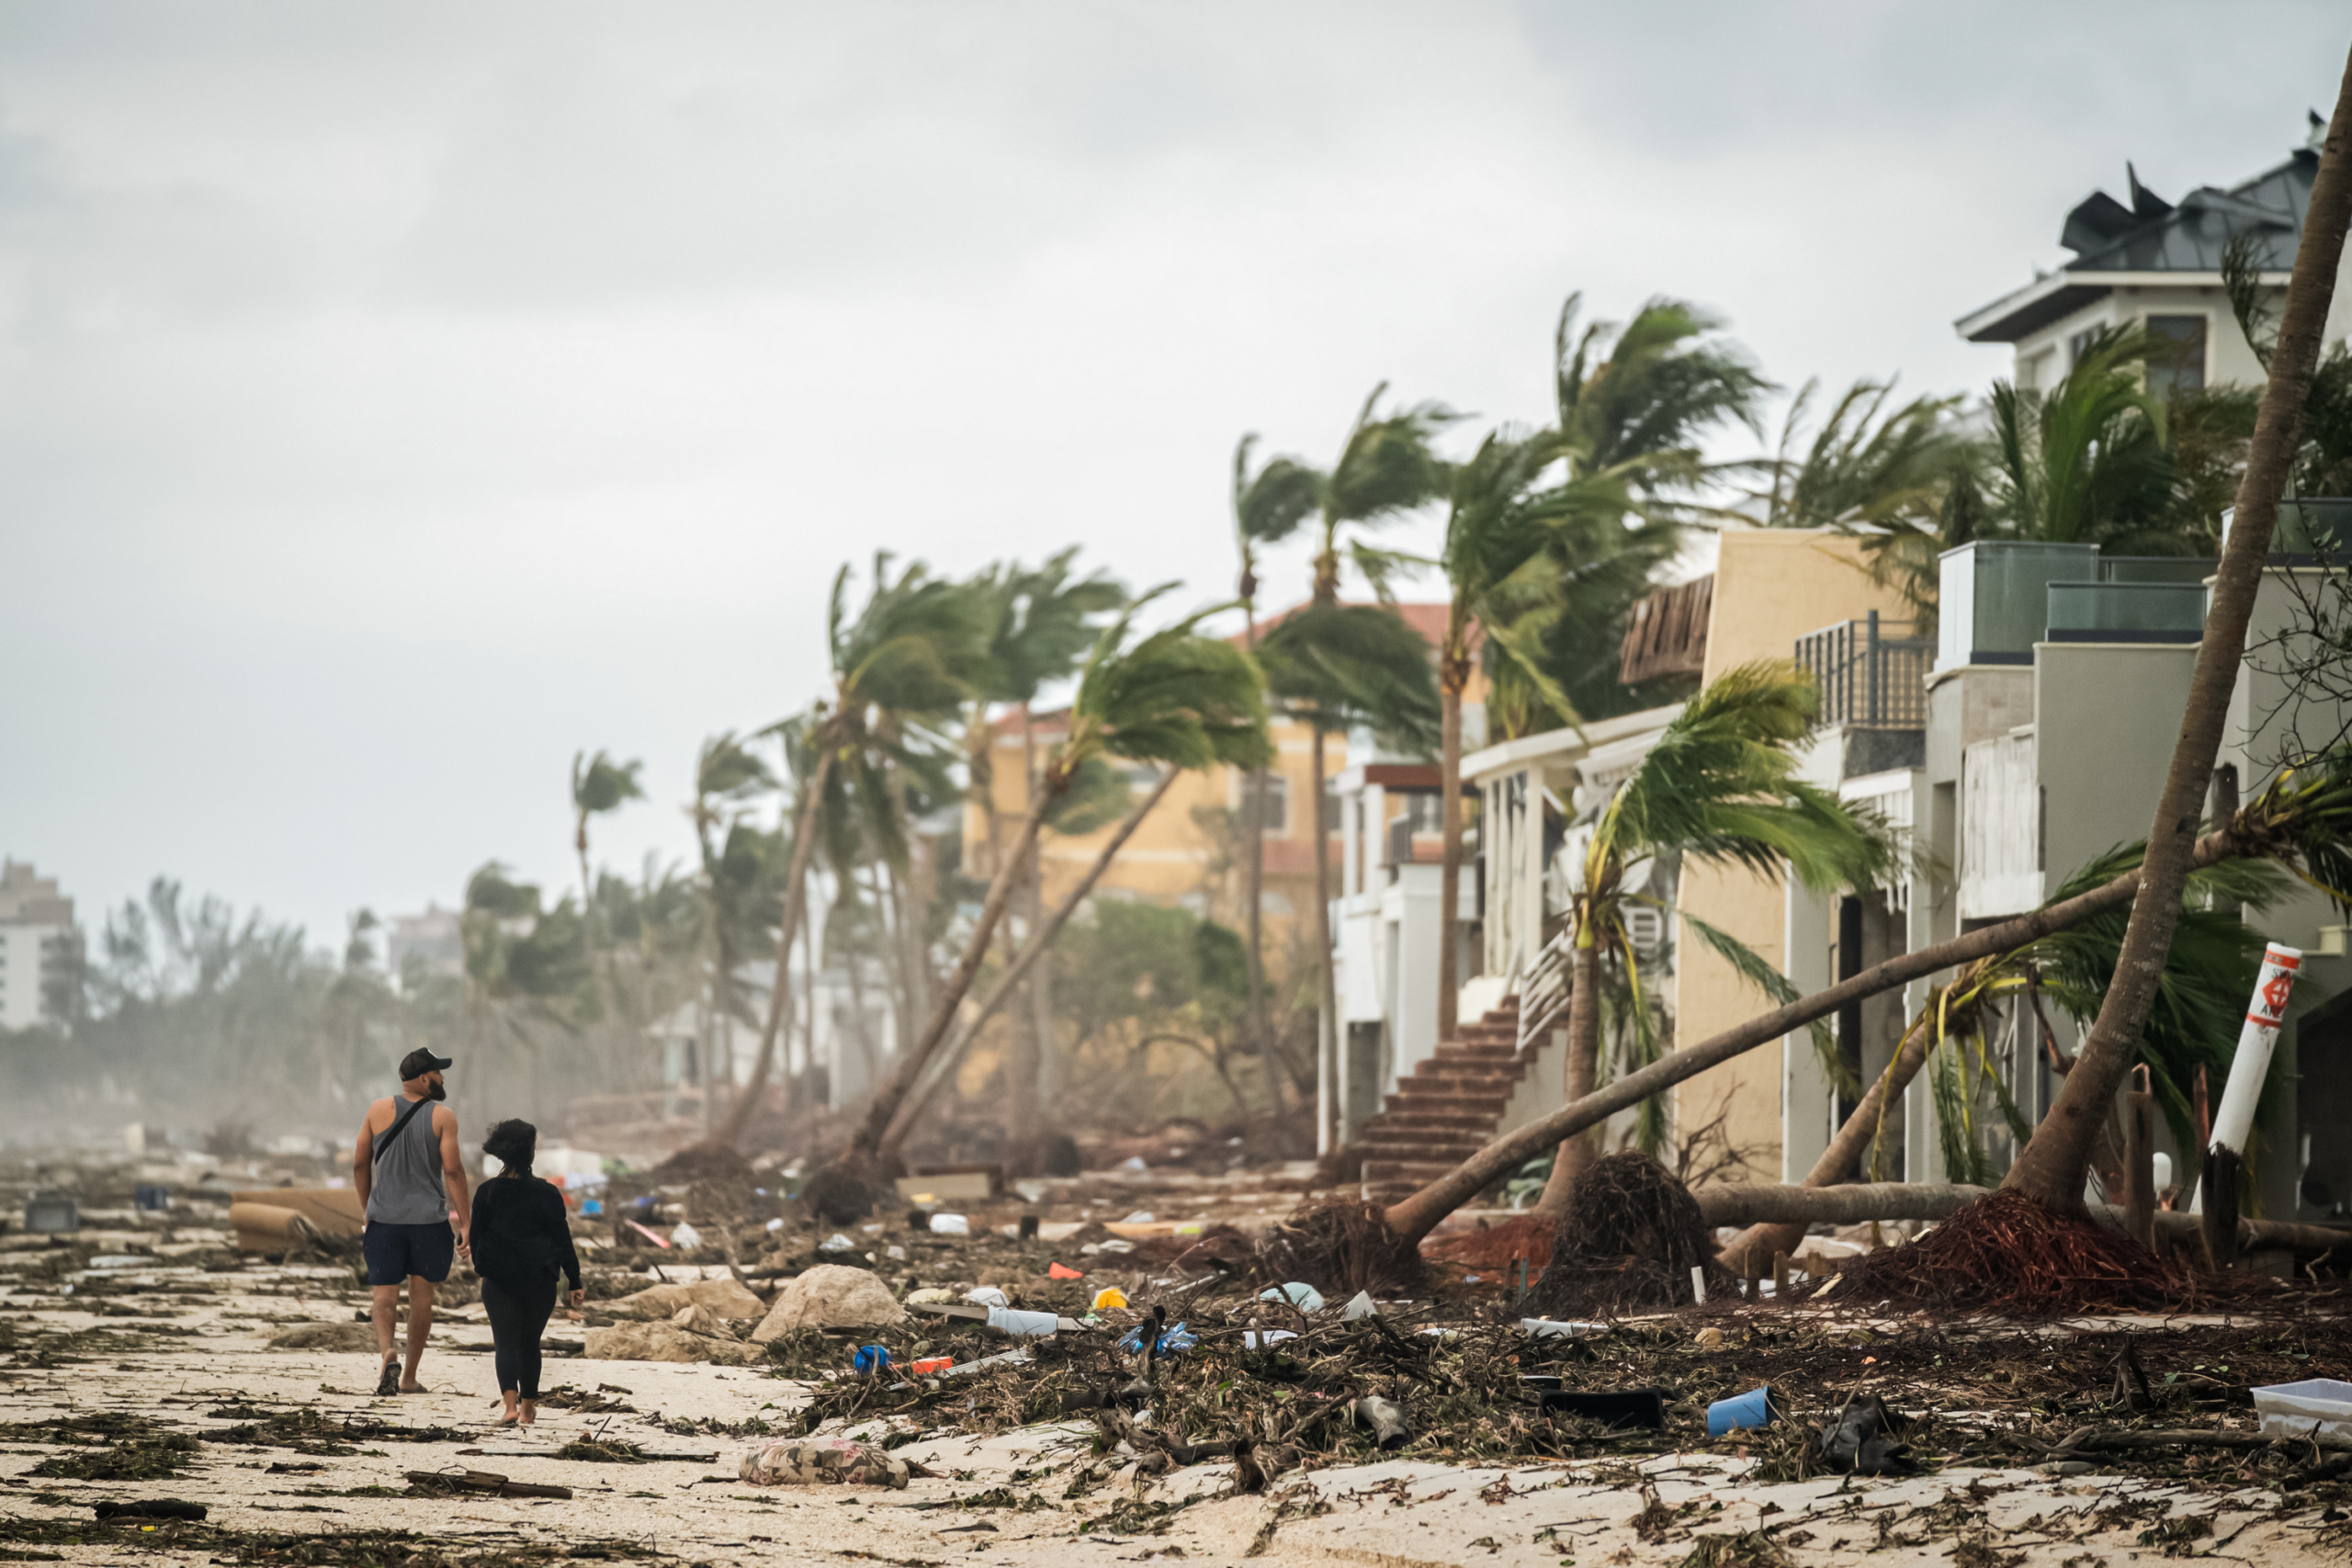 Người dân đi bộ dọc bãi biển, nhìn nhà cửa bị hư hại do Bão Ian ở Bonita Springs, Florida vào ngày 29 /09/2022. (Ảnh: Sean Rayford/Getty Images)